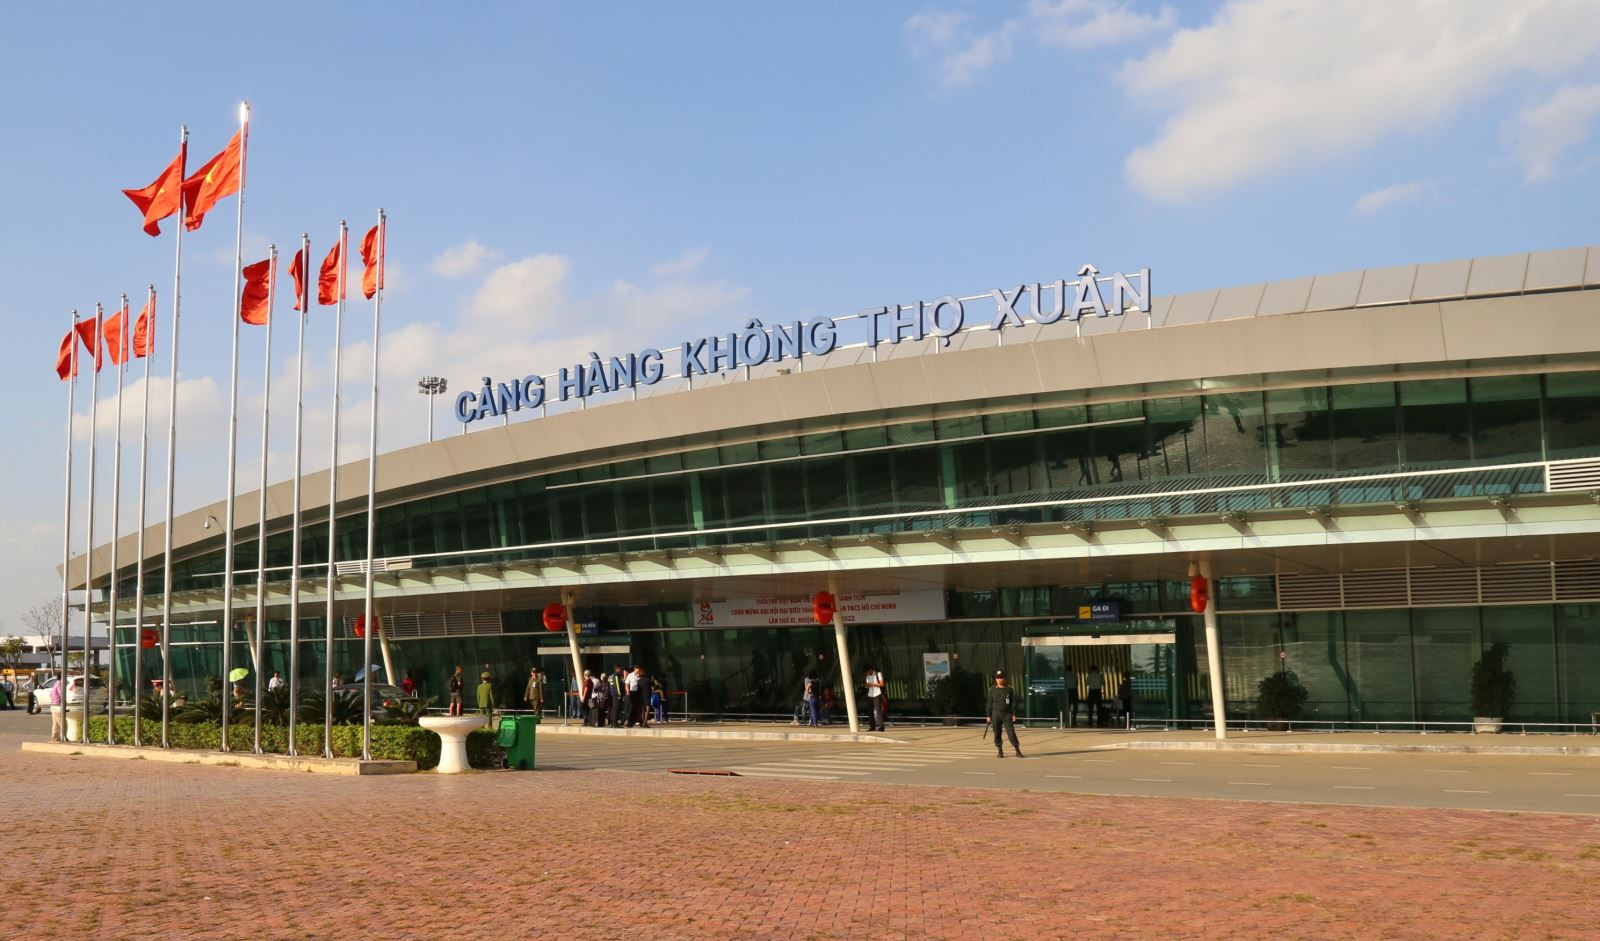 Hành khách trên các chuyến bay từ TP.HCM về cảng hàng không Thọ Xuân được kiểm tra, kiểm soát chặt chẽ.